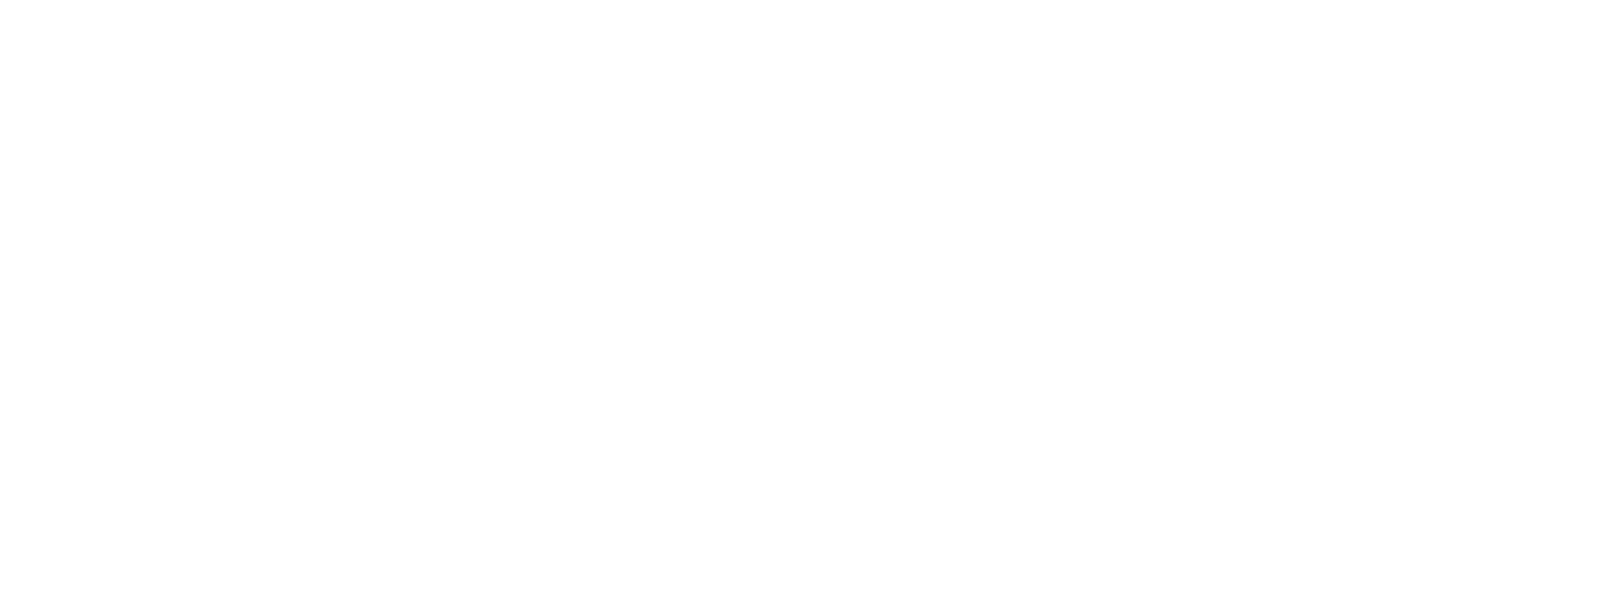 Luis Lorente | Fotografía | Video | Conciertos, retrato, social